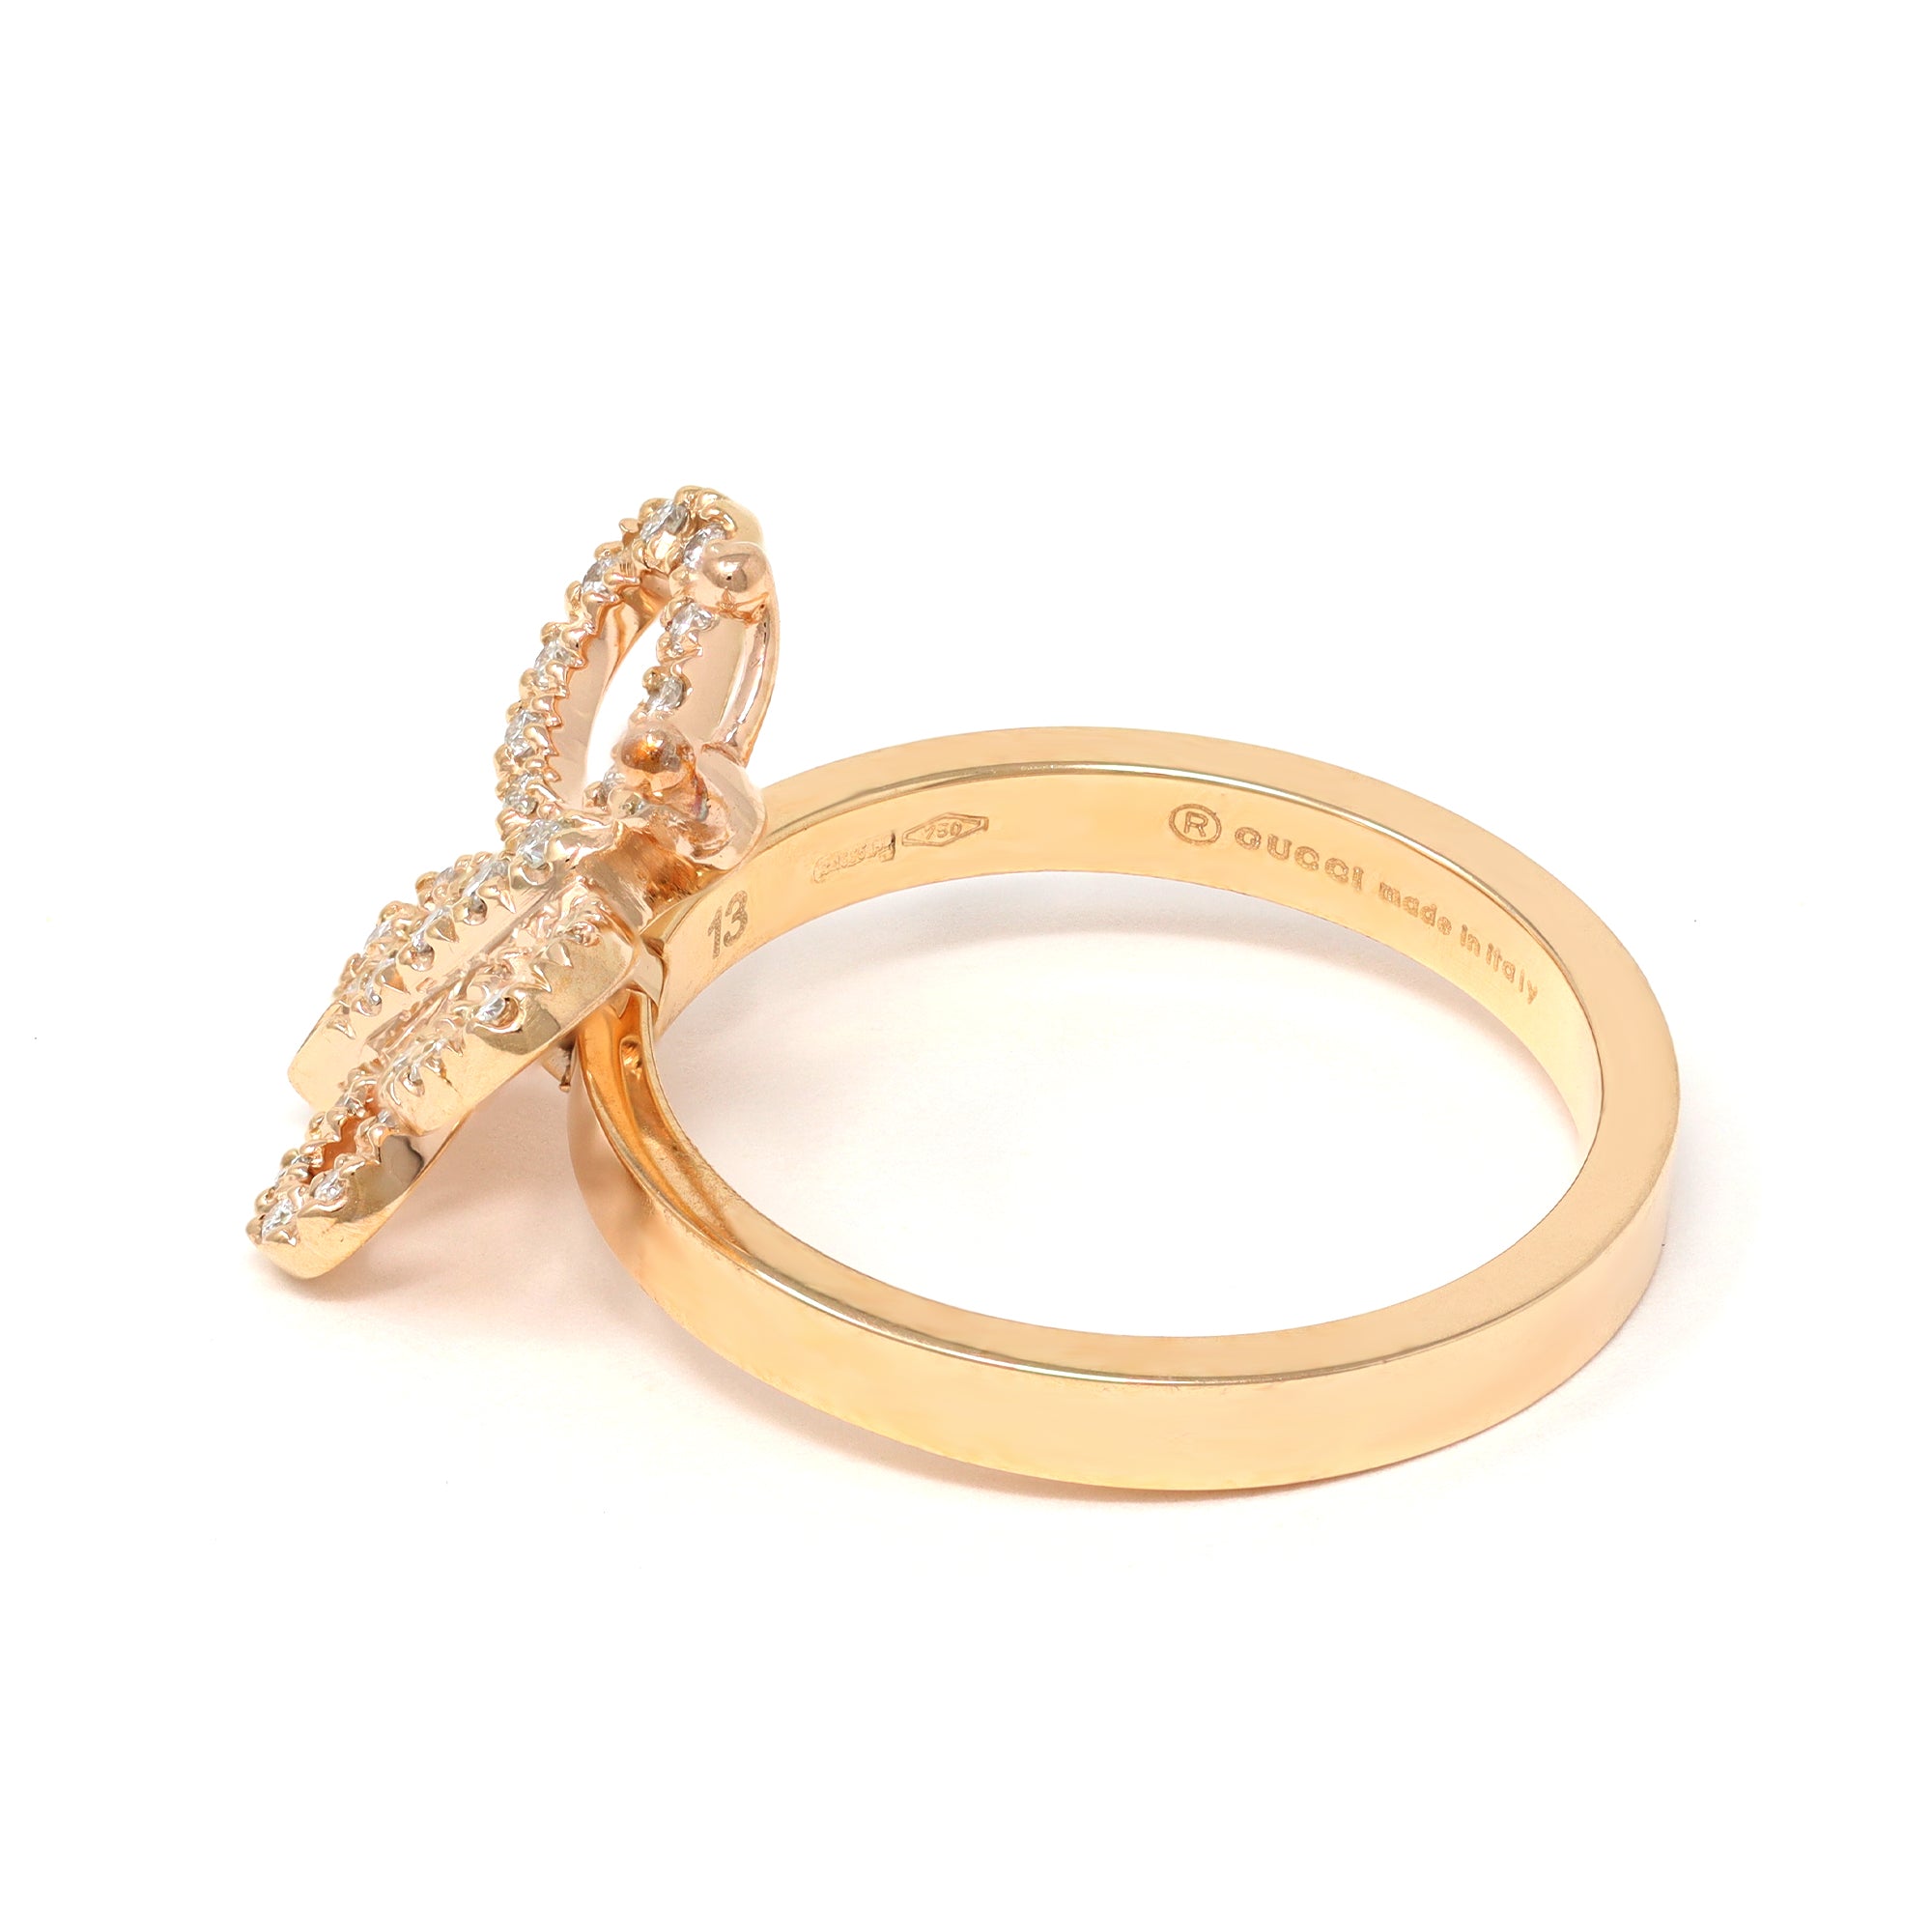 Flora 18k diamond bracelet in 18k rose gold